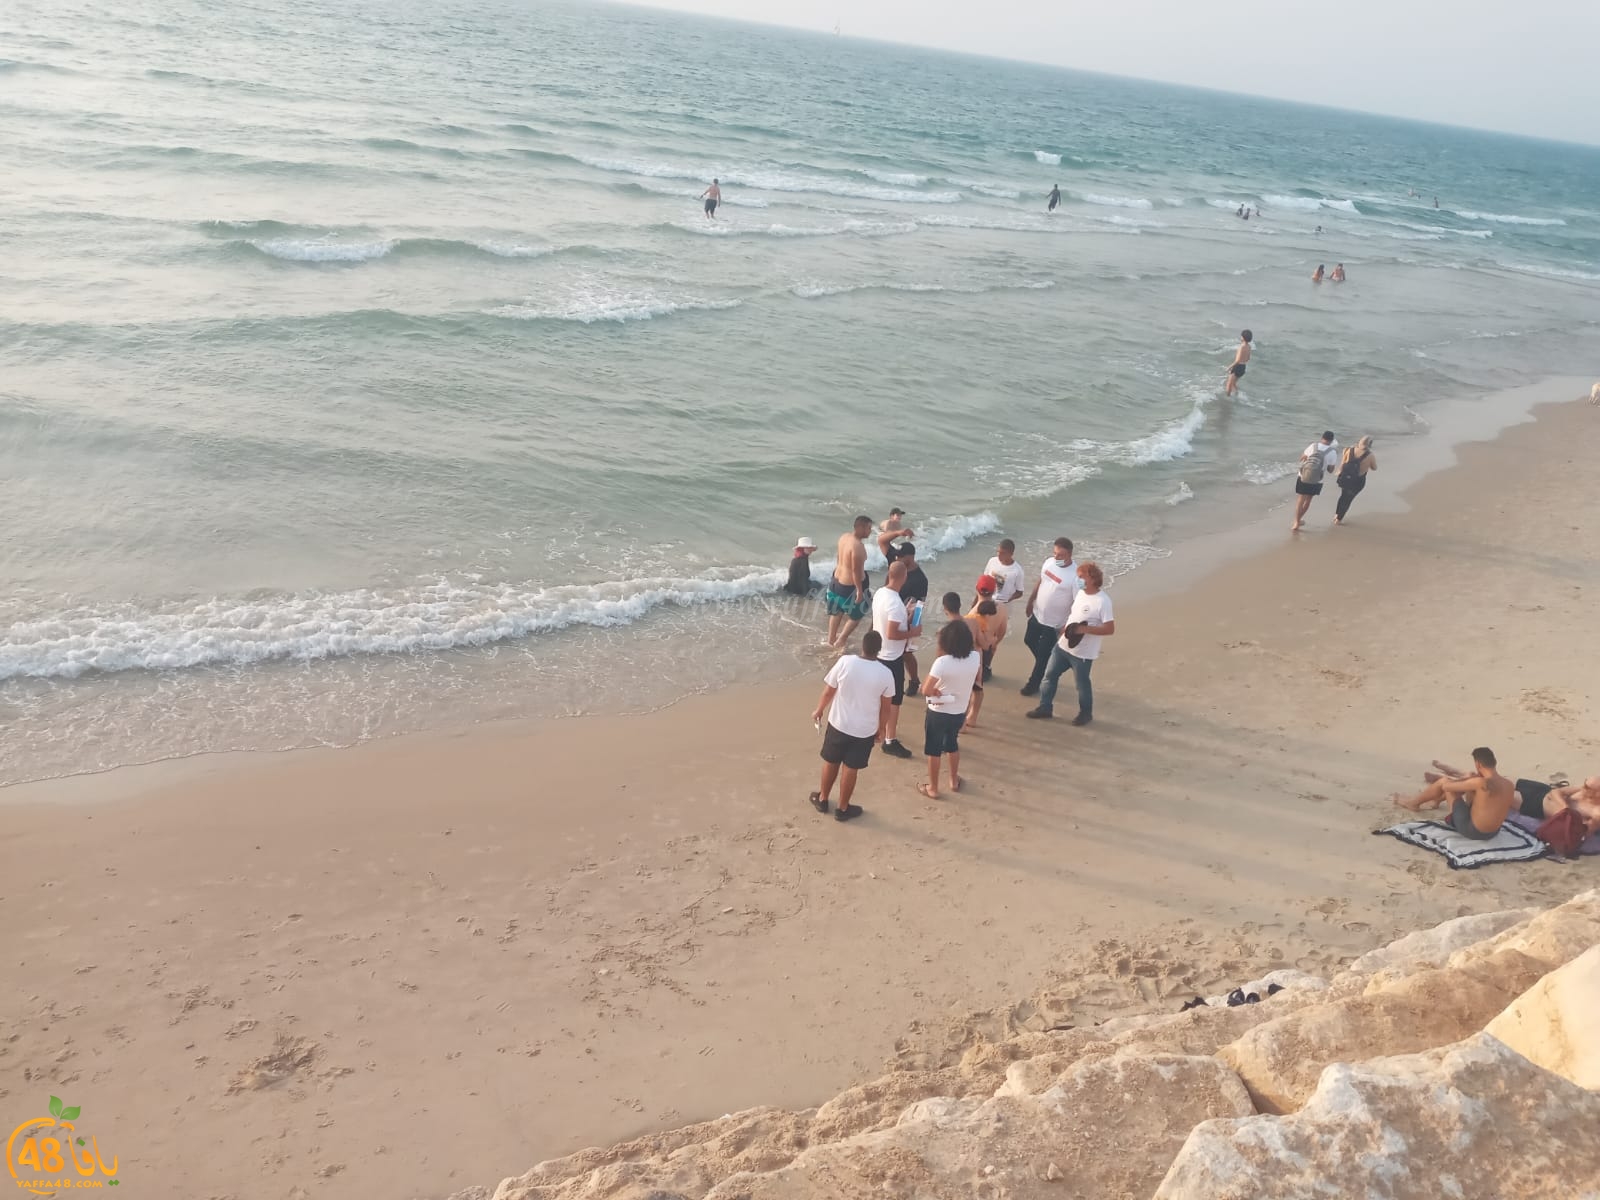  فيديو: حملة توعية النزلاء من مخاطر البحر مستمرة على شواطئ يافا 